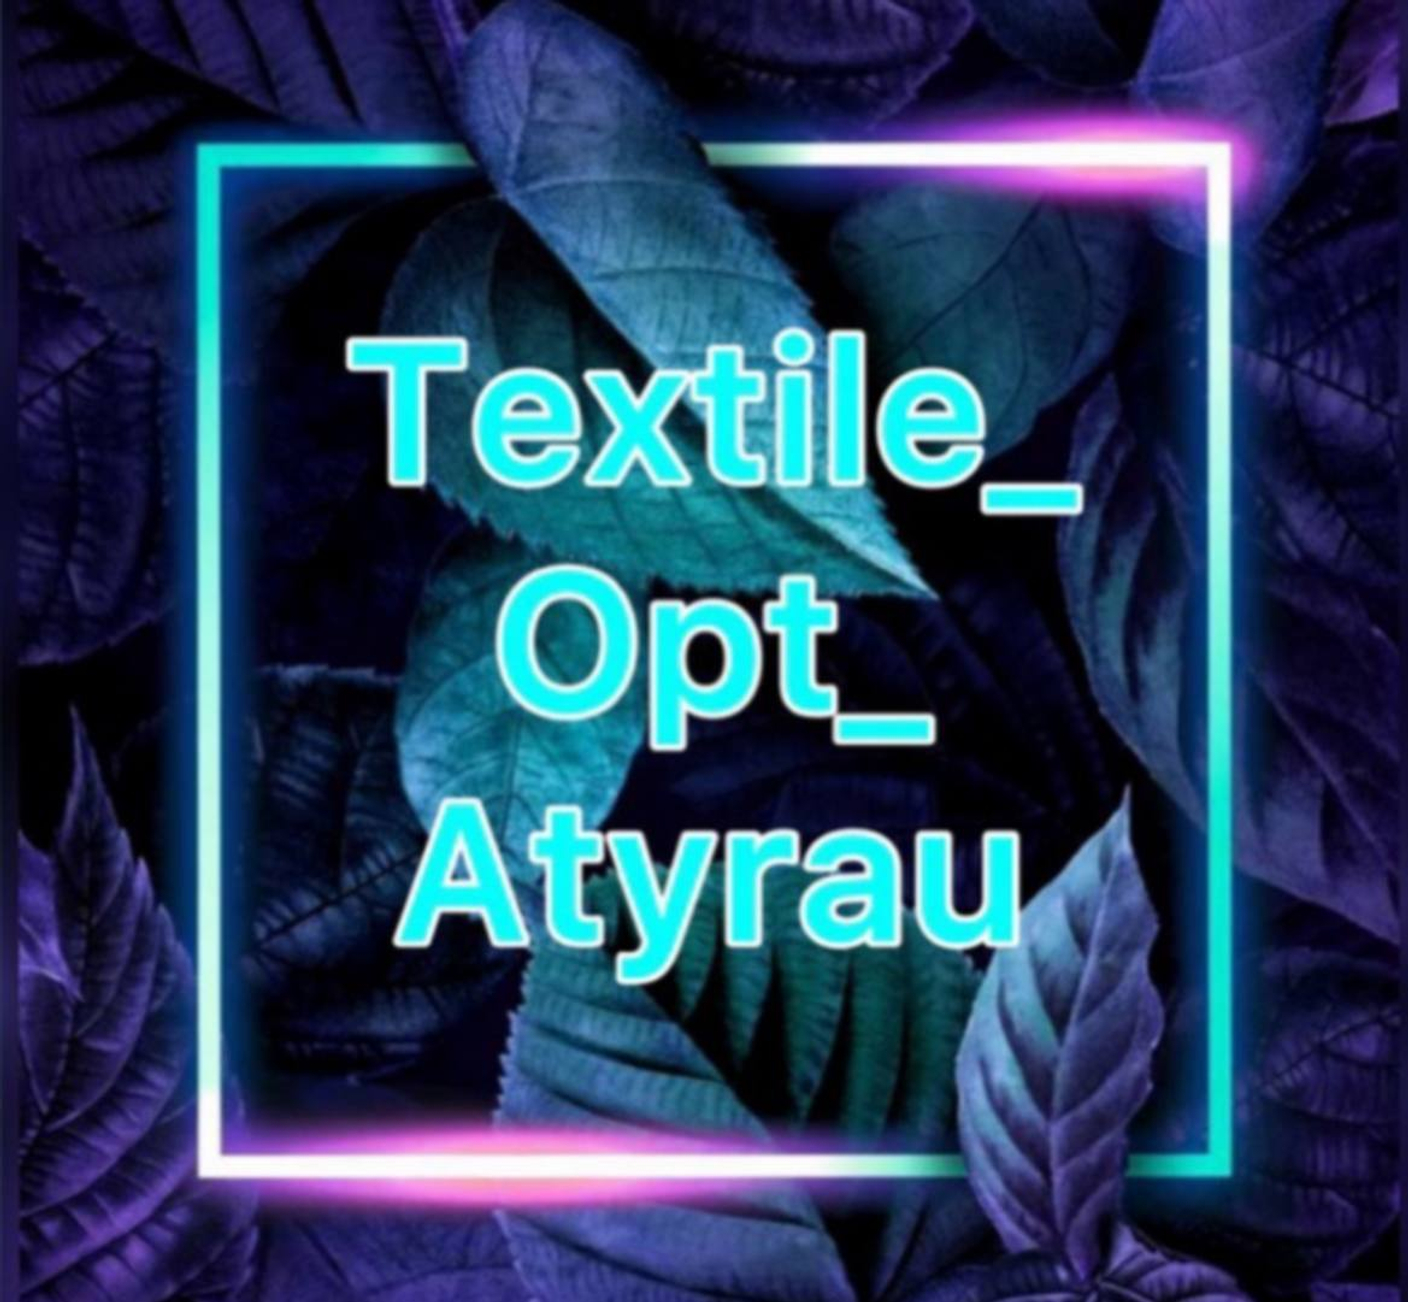 Textile_opt_Atyrau